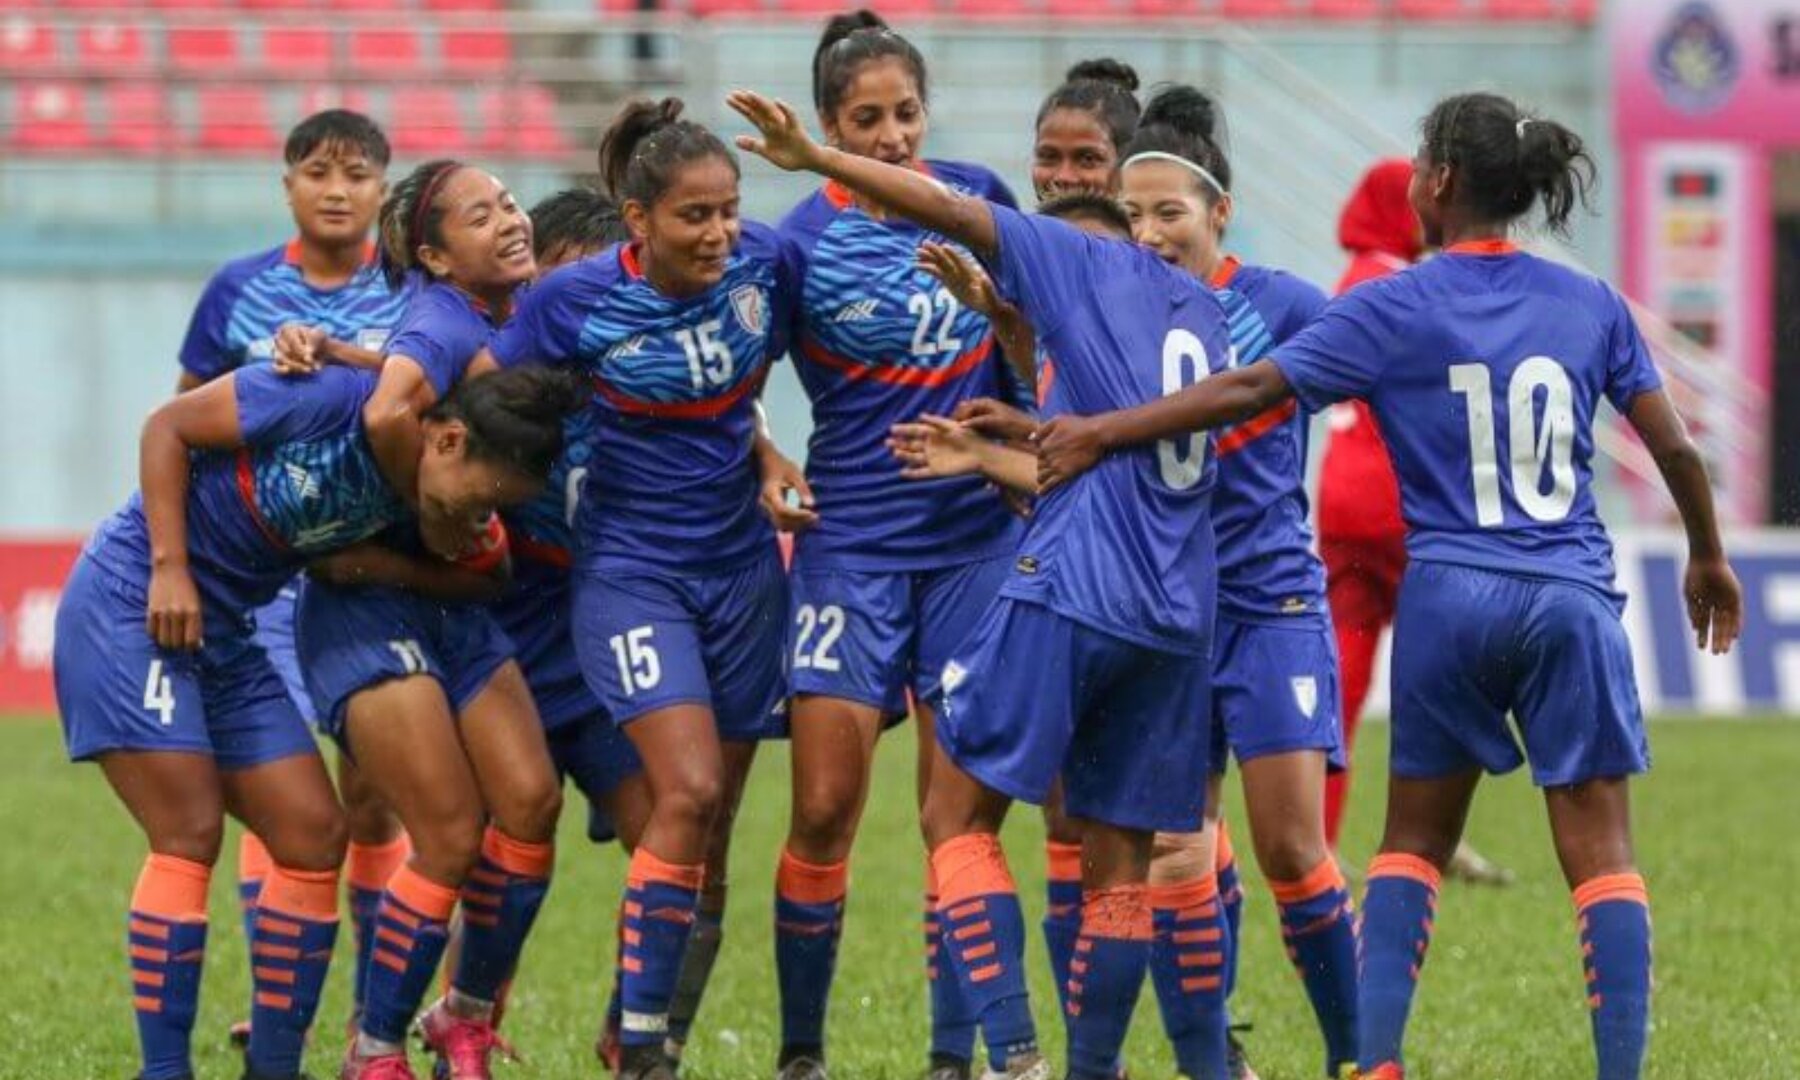 Maldives vs India SAFF Women's Championship